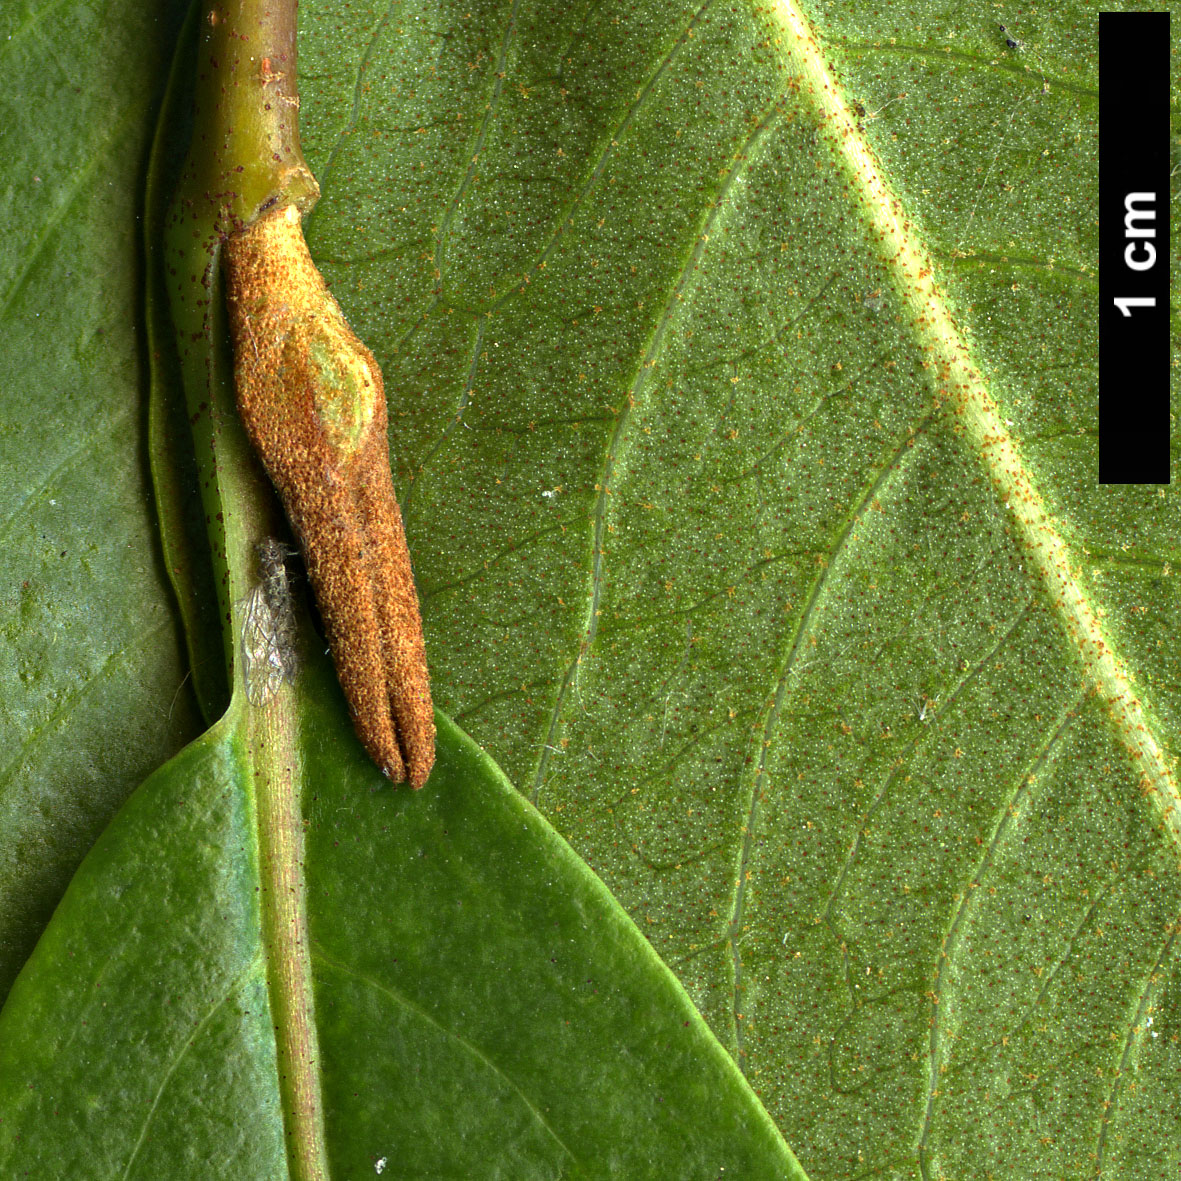 High resolution image: Family: Adoxaceae - Genus: Viburnum - Taxon: cassinoides